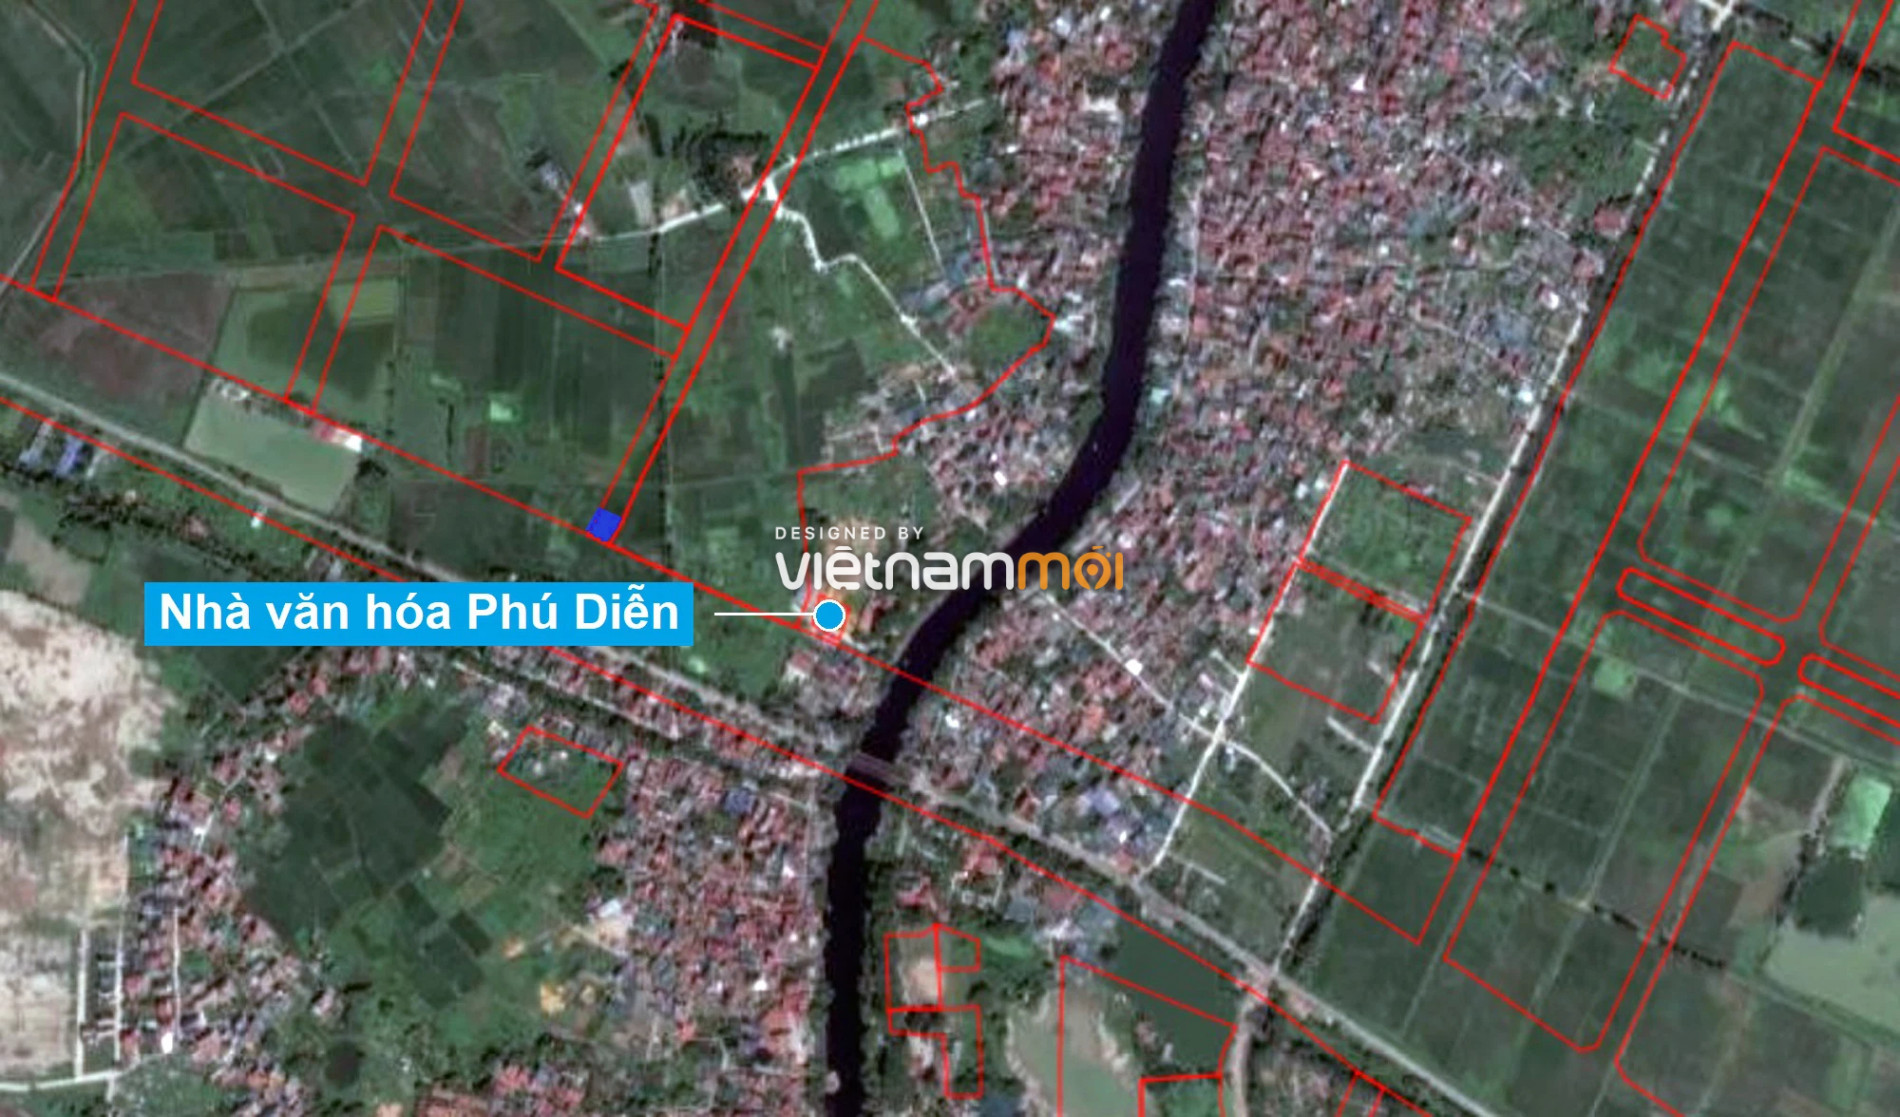 Những khu đất sắp thu hồi để mở đường ở xã Hữu Hòa, Thanh Trì, Hà Nội (phần 5) - Ảnh 16.